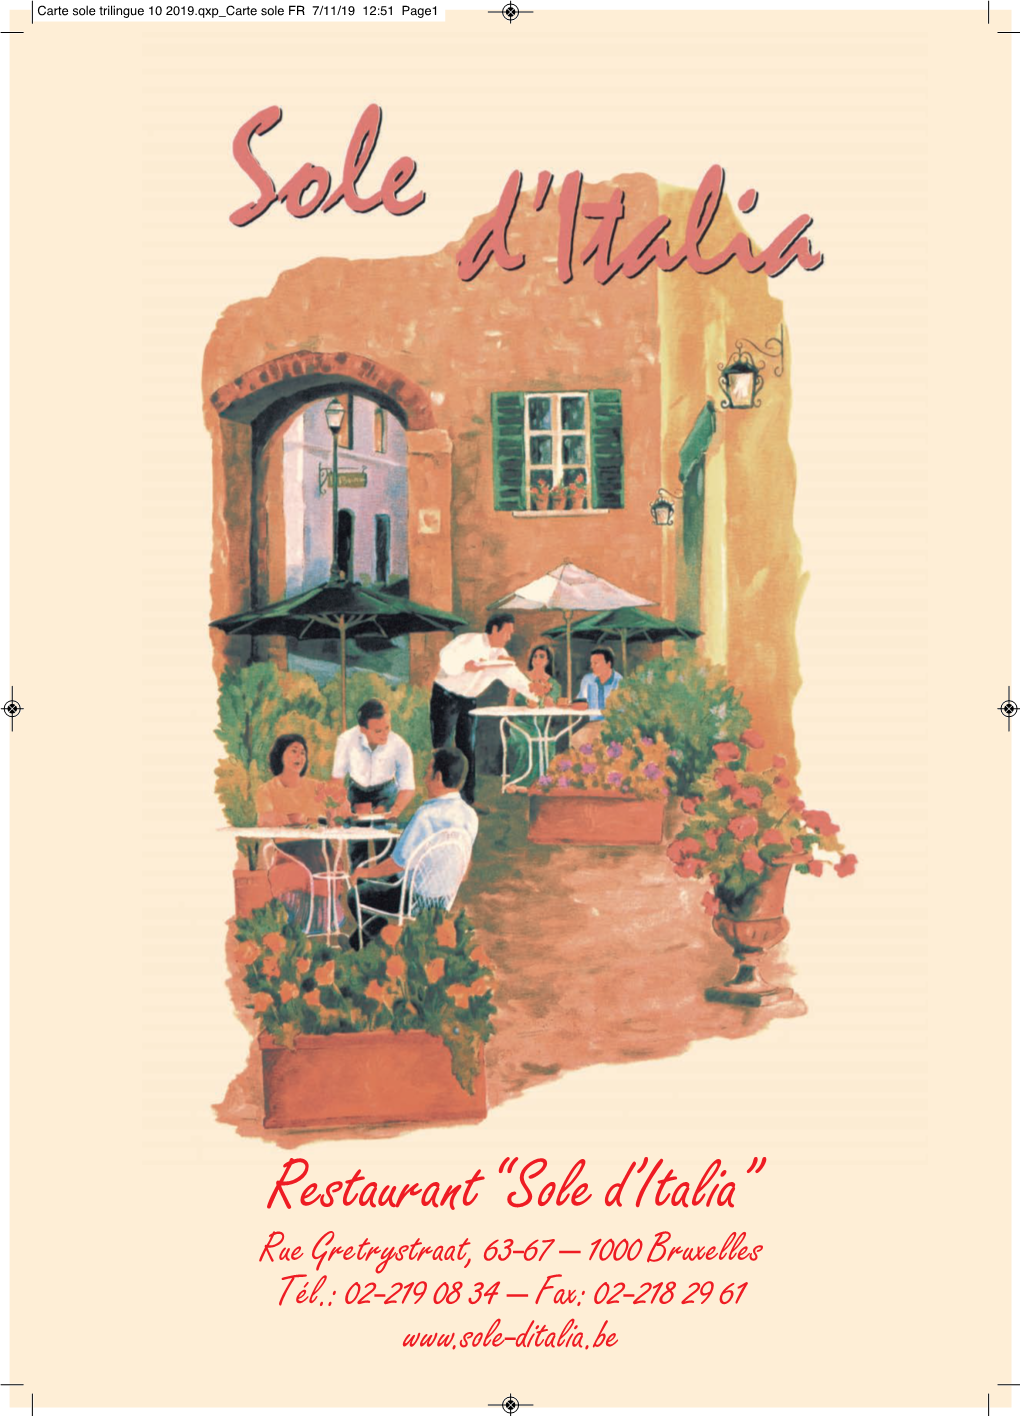 Restaurant “Sole D'italia”